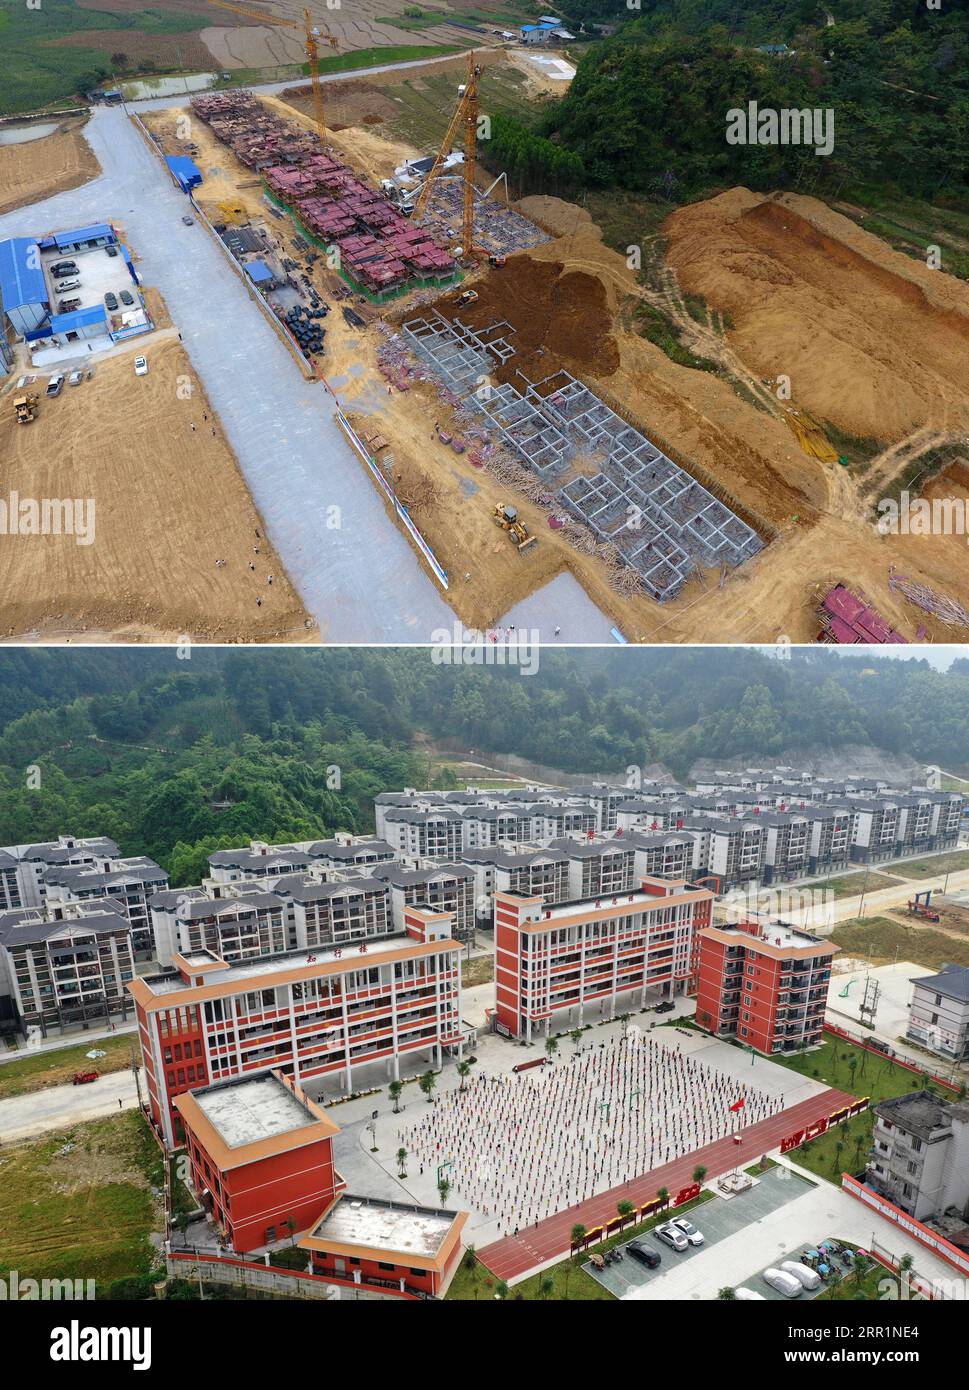 200922 -- NANNING, 22. September 2020 -- auf diesem Kombi-Foto zeigt das obere am 13. Oktober 2016 eine Luftaufnahme einer Armutsbekämpfung-Neuansiedlungsstätte, die in der Xia ao Township gebaut wird, und das untere am 25. April, 2019 zeigt eine Luftaufnahme der bereits errichteten Armutsbekämpfung in der Xia ao Township von du an Yao Autonomous County in der südchinesischen autonomen Region Guangxi Zhuang. In den letzten fünf Jahren hat die autonome Region Guangxi Zhuang eine Reihe von Projekten zur Armutsbekämpfung durchgeführt, wie etwa die Beschleunigung des Baus von Verkehrsinfrastrukturen in armen Gebieten, Auto Stockfoto